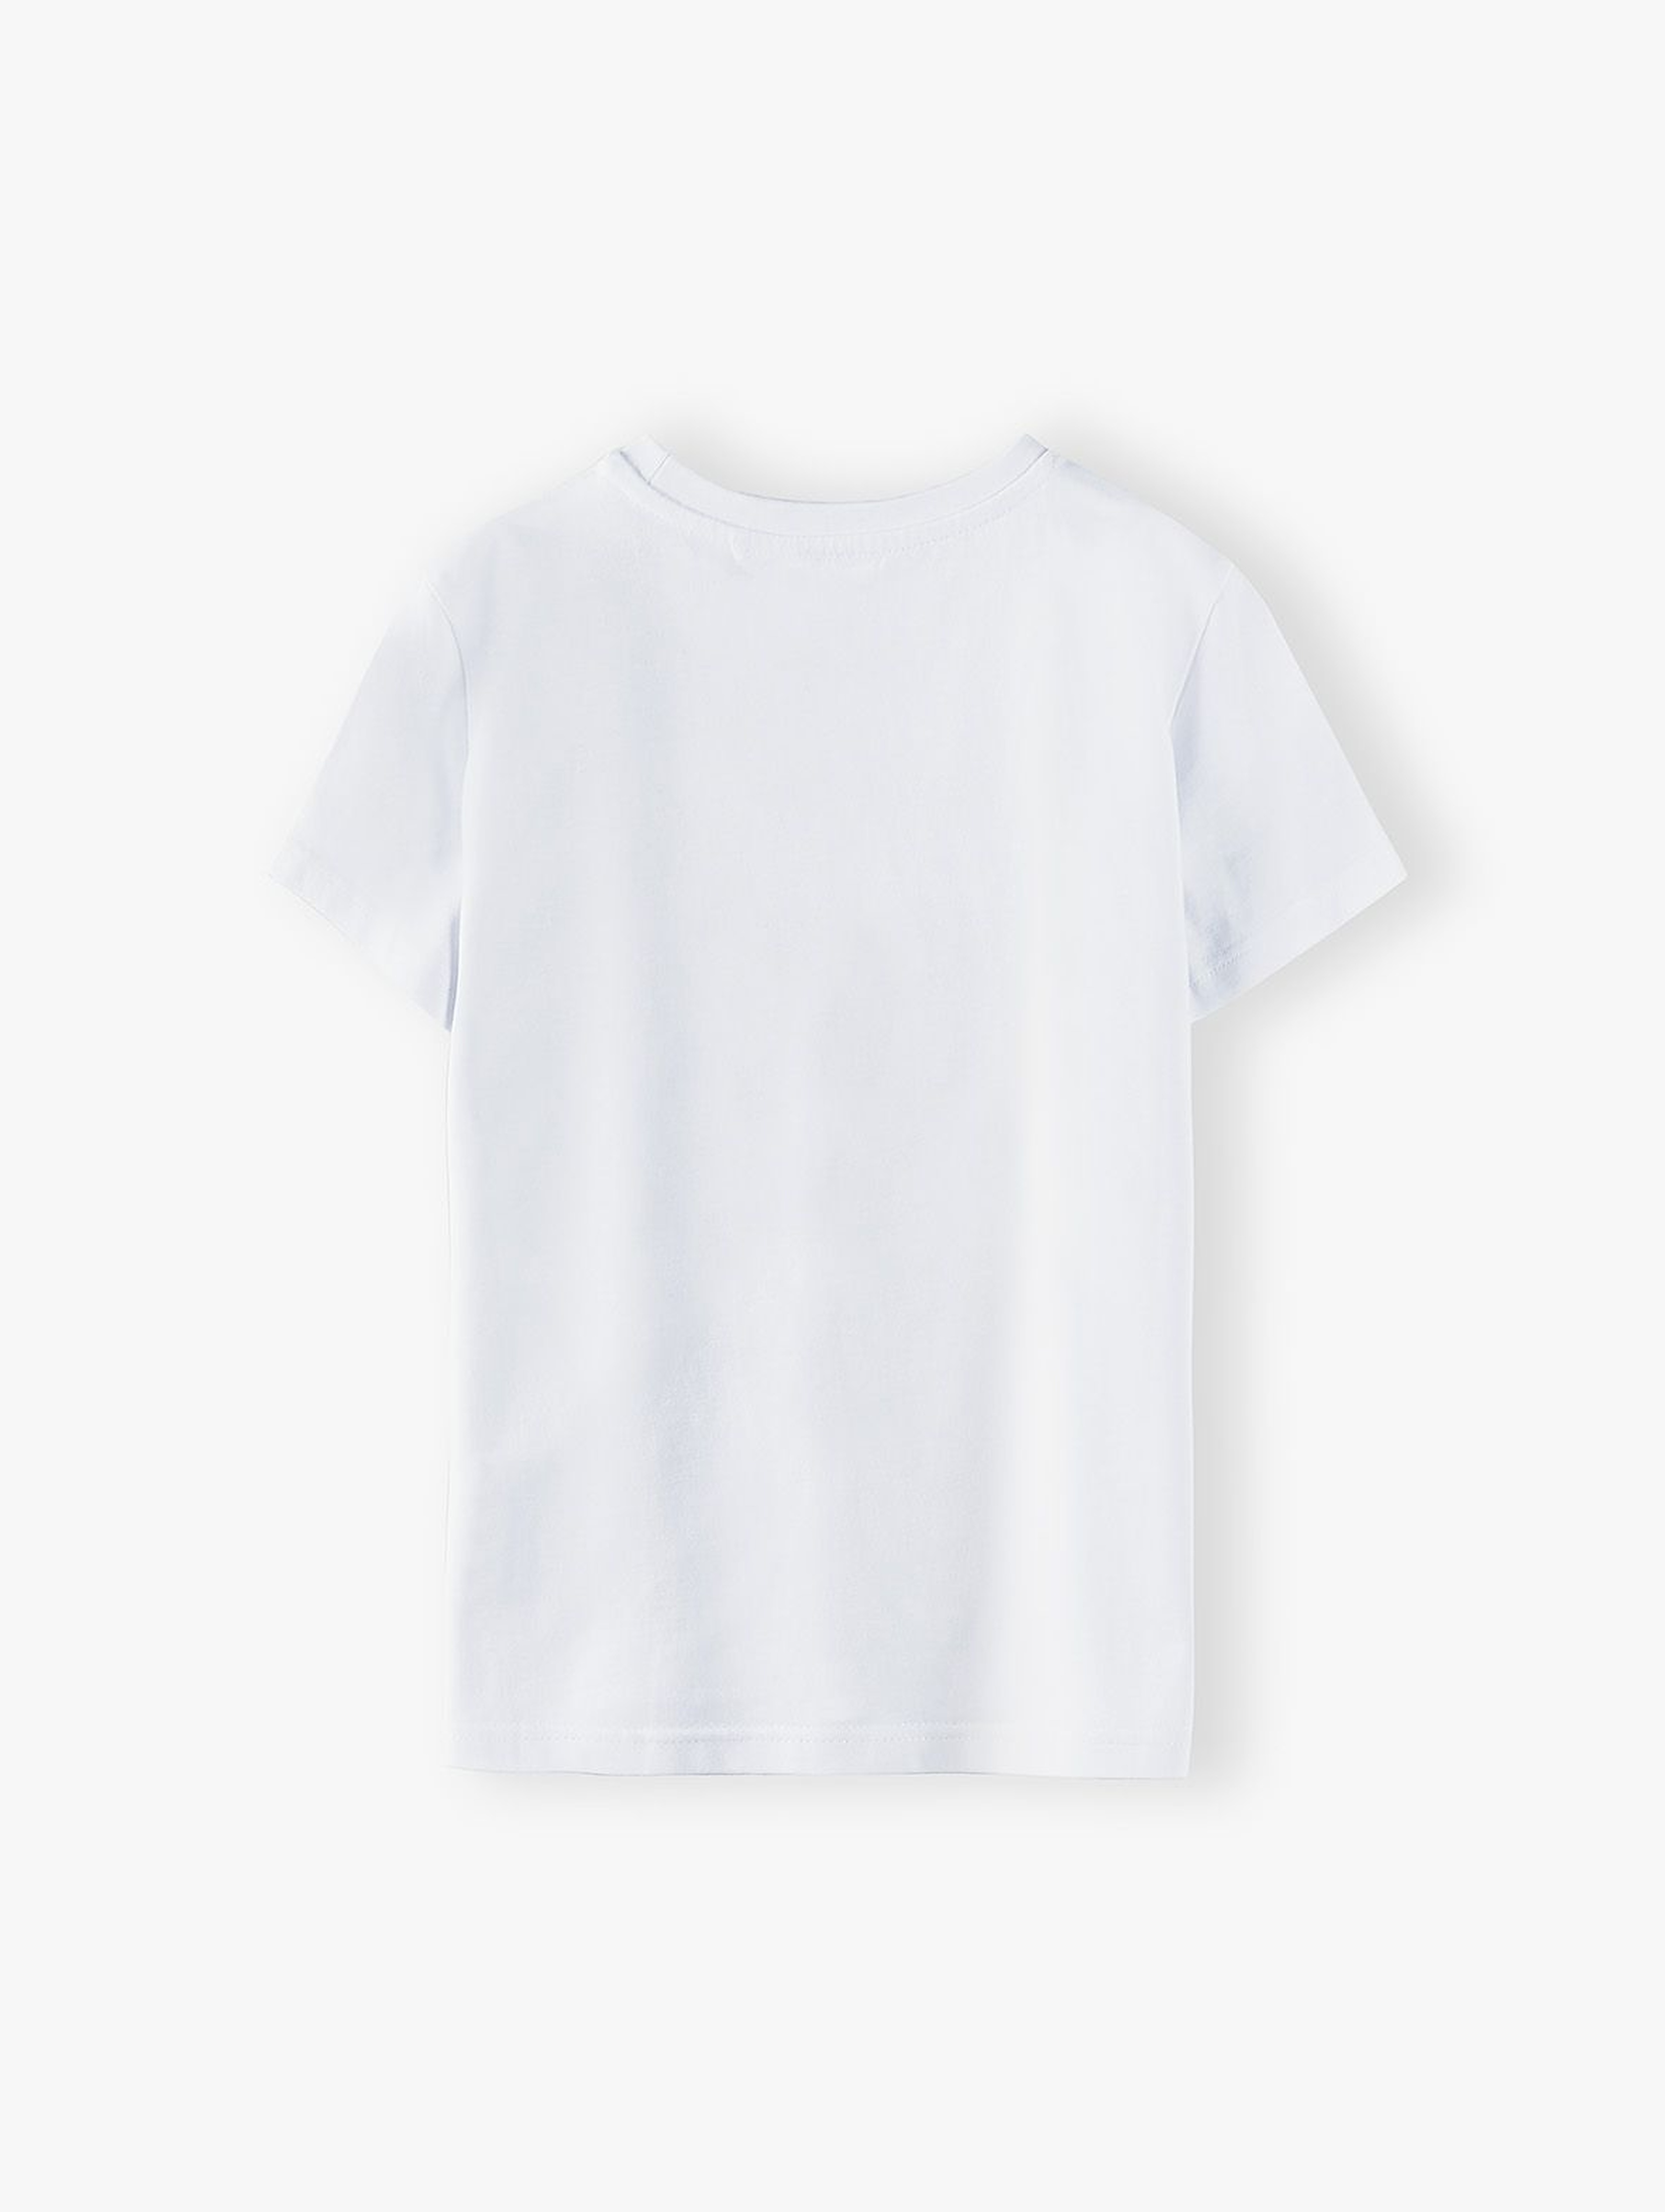 T-shirt chłopięcy biały z nadrukiem